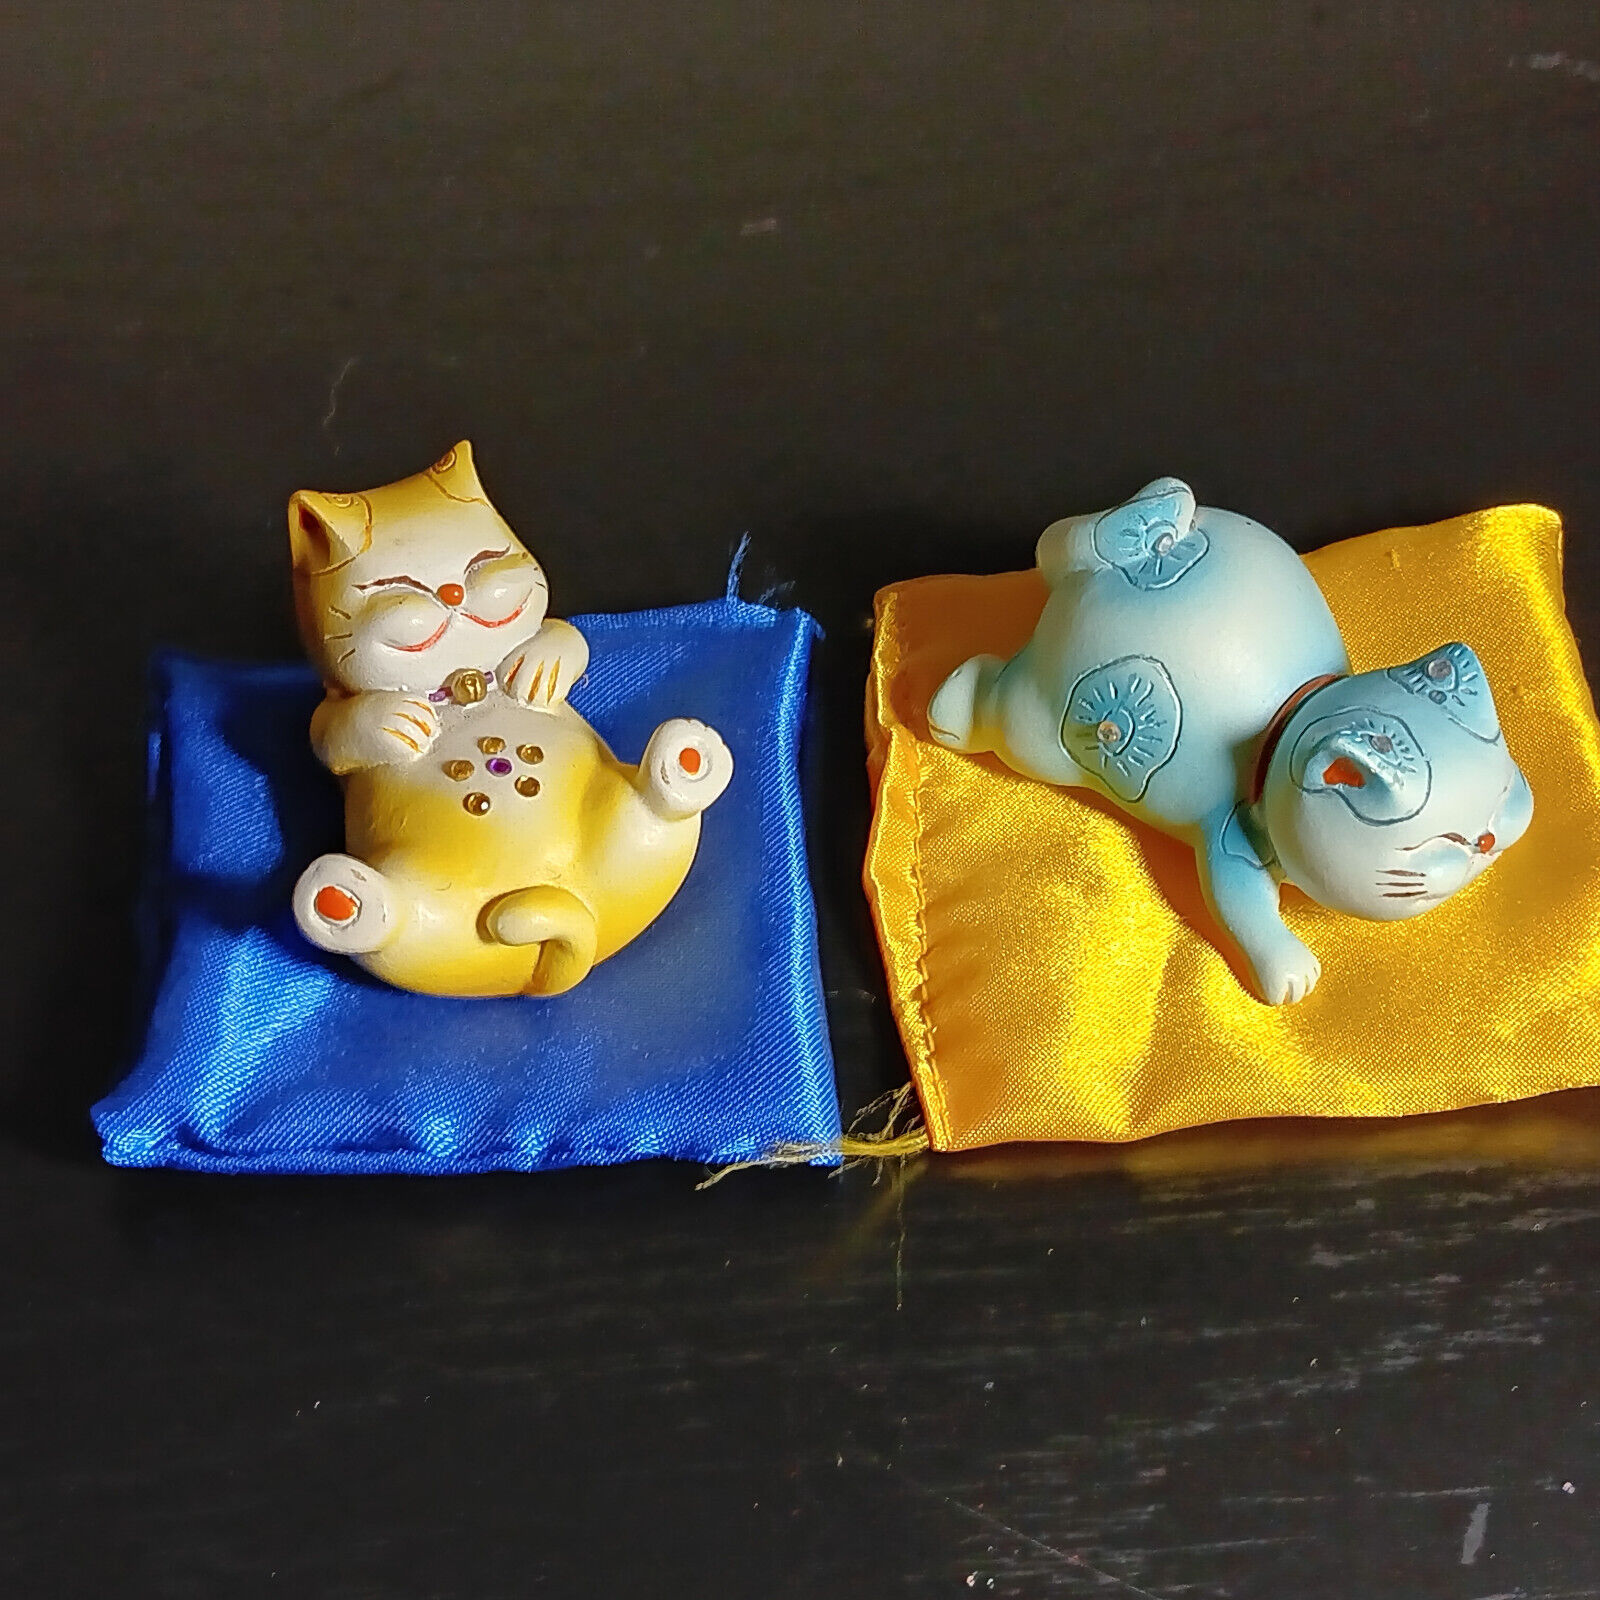 Pair of Cute Cat Figurines